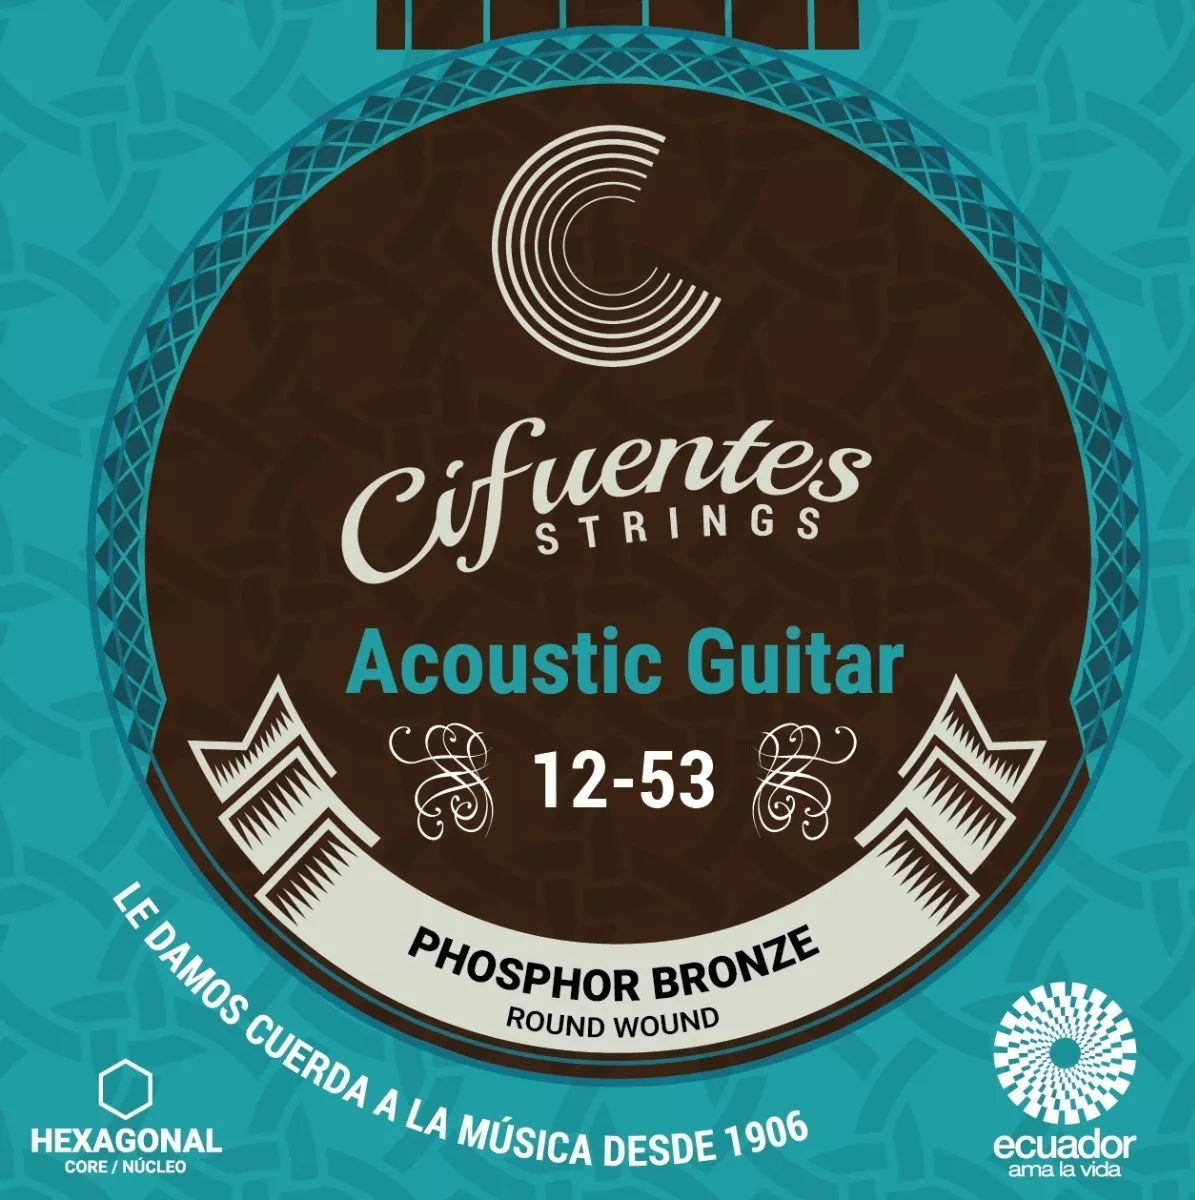 Cuerdas Guitarra Eléctroacústica 12-53 Cifuentes Strings